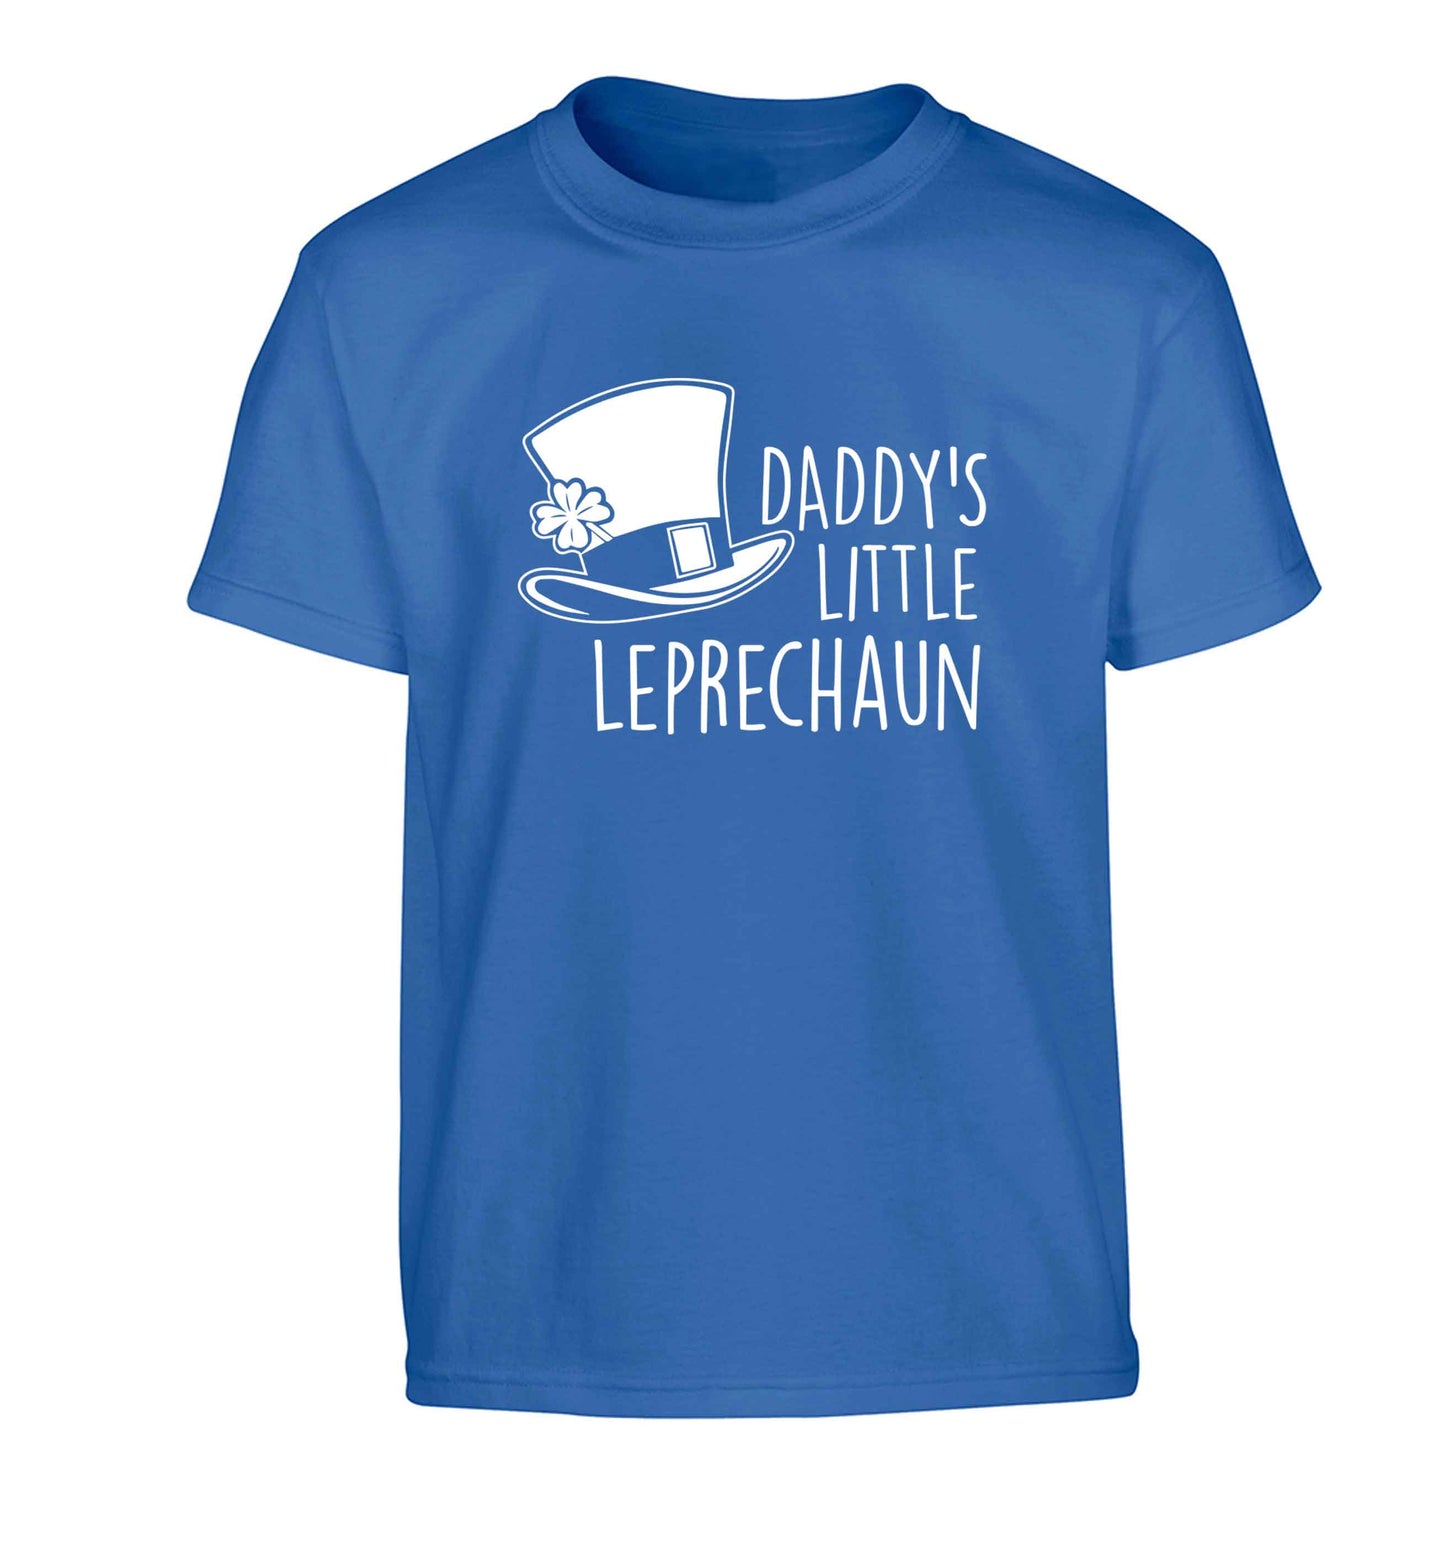 Daddy's little leprechaun Children's blue Tshirt 12-13 Years